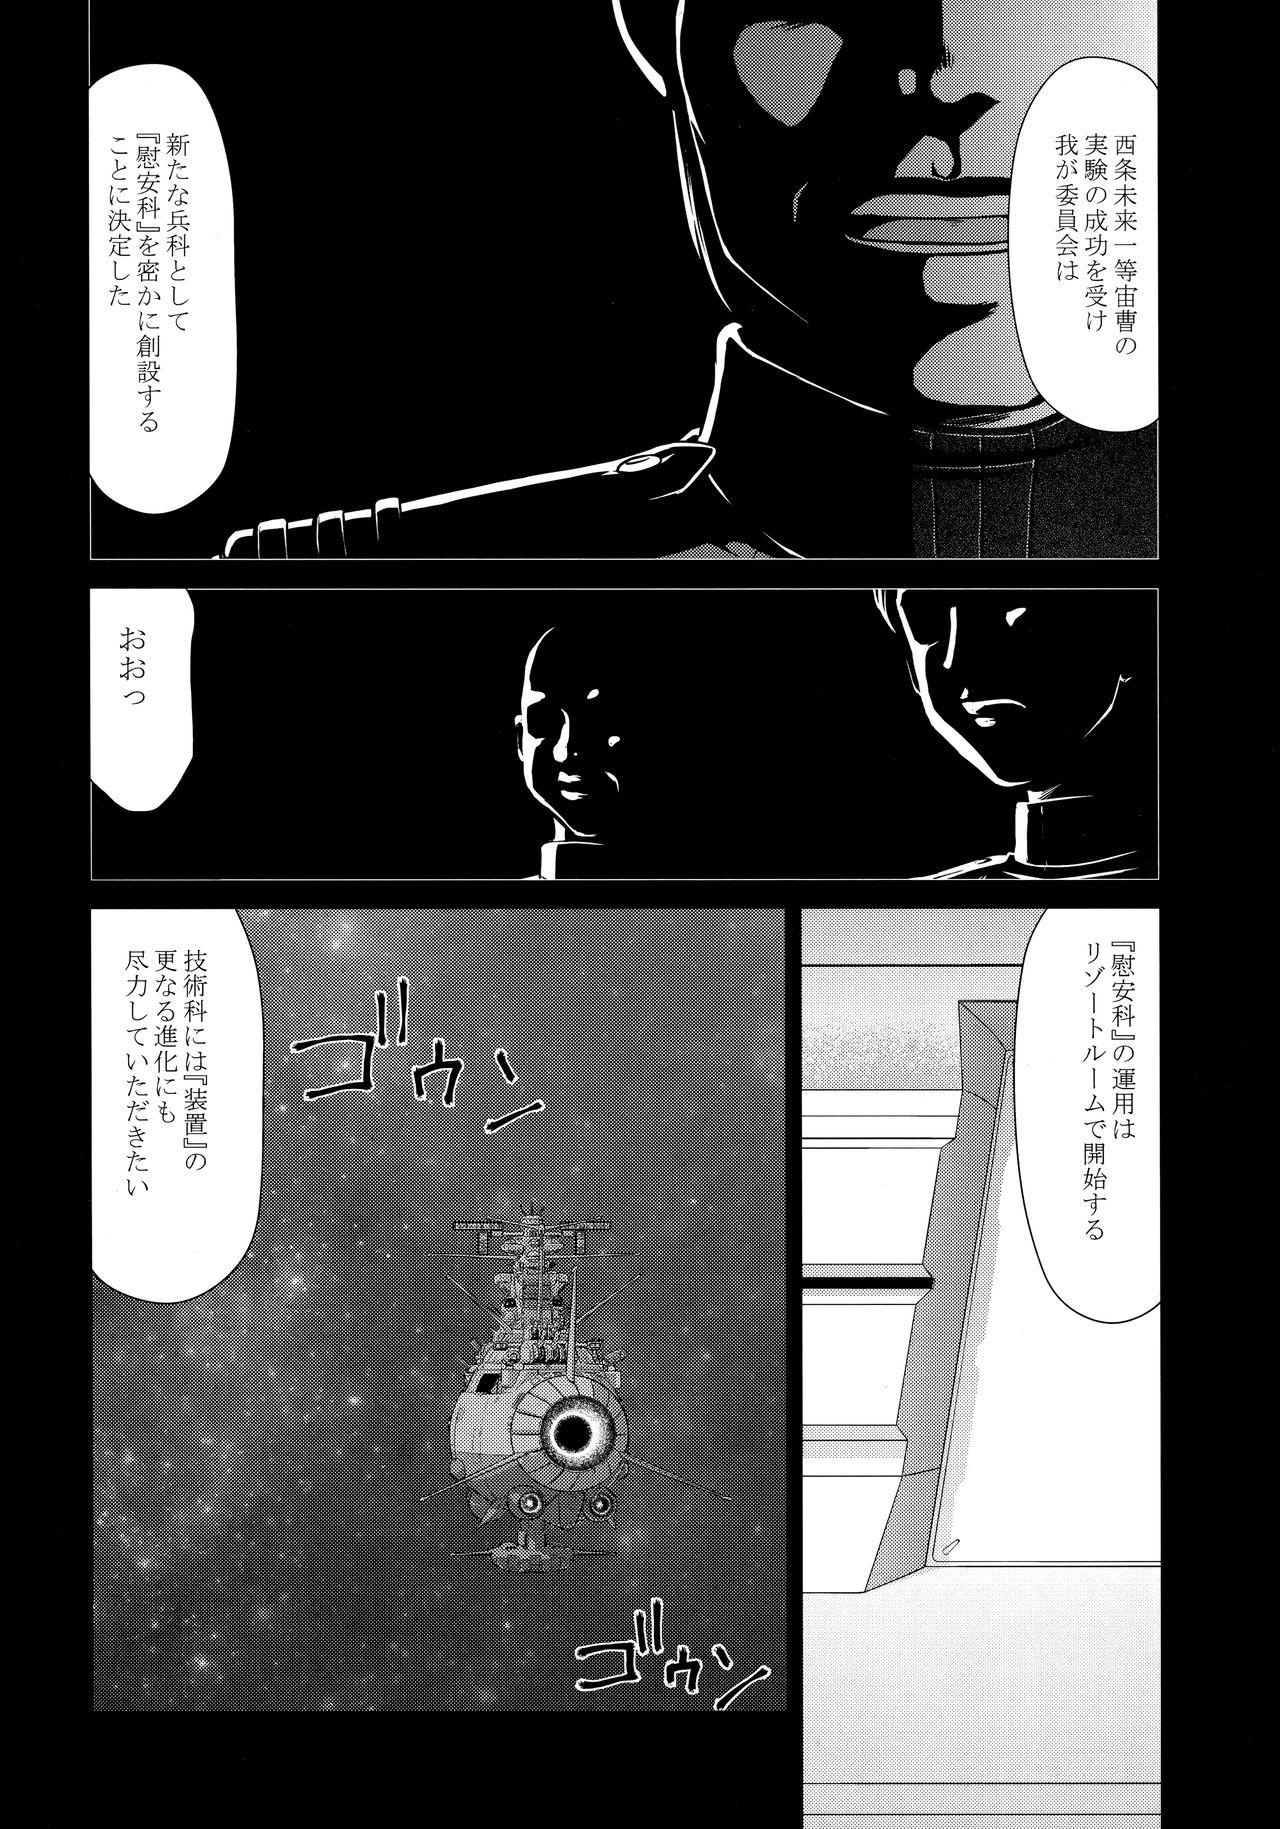 Stretch Yuki no Shizuku Mesu - Space battleship yamato Space battleship yamato 2199 Funk - Page 11